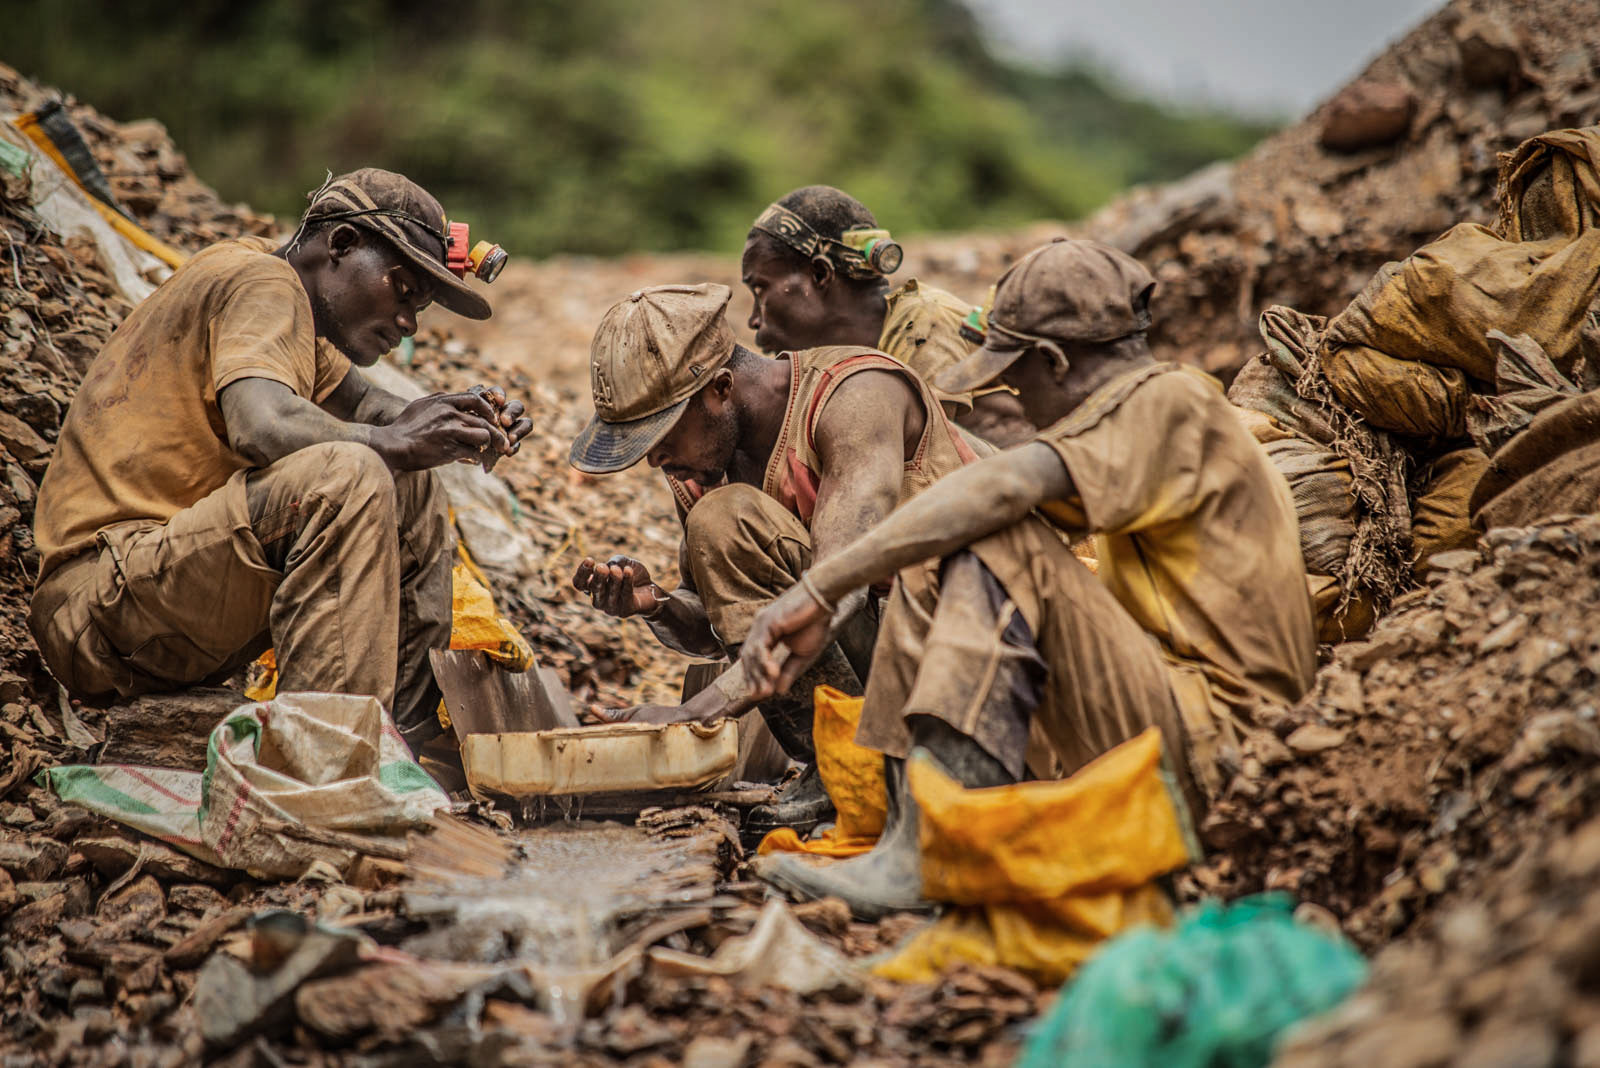 Province du Sud-Kivu, mars 2021. Des artisans orpailleurs cherchent l’or à la batée à Kamituga. © Moses Sawasawa pour la Fondation Carmignac